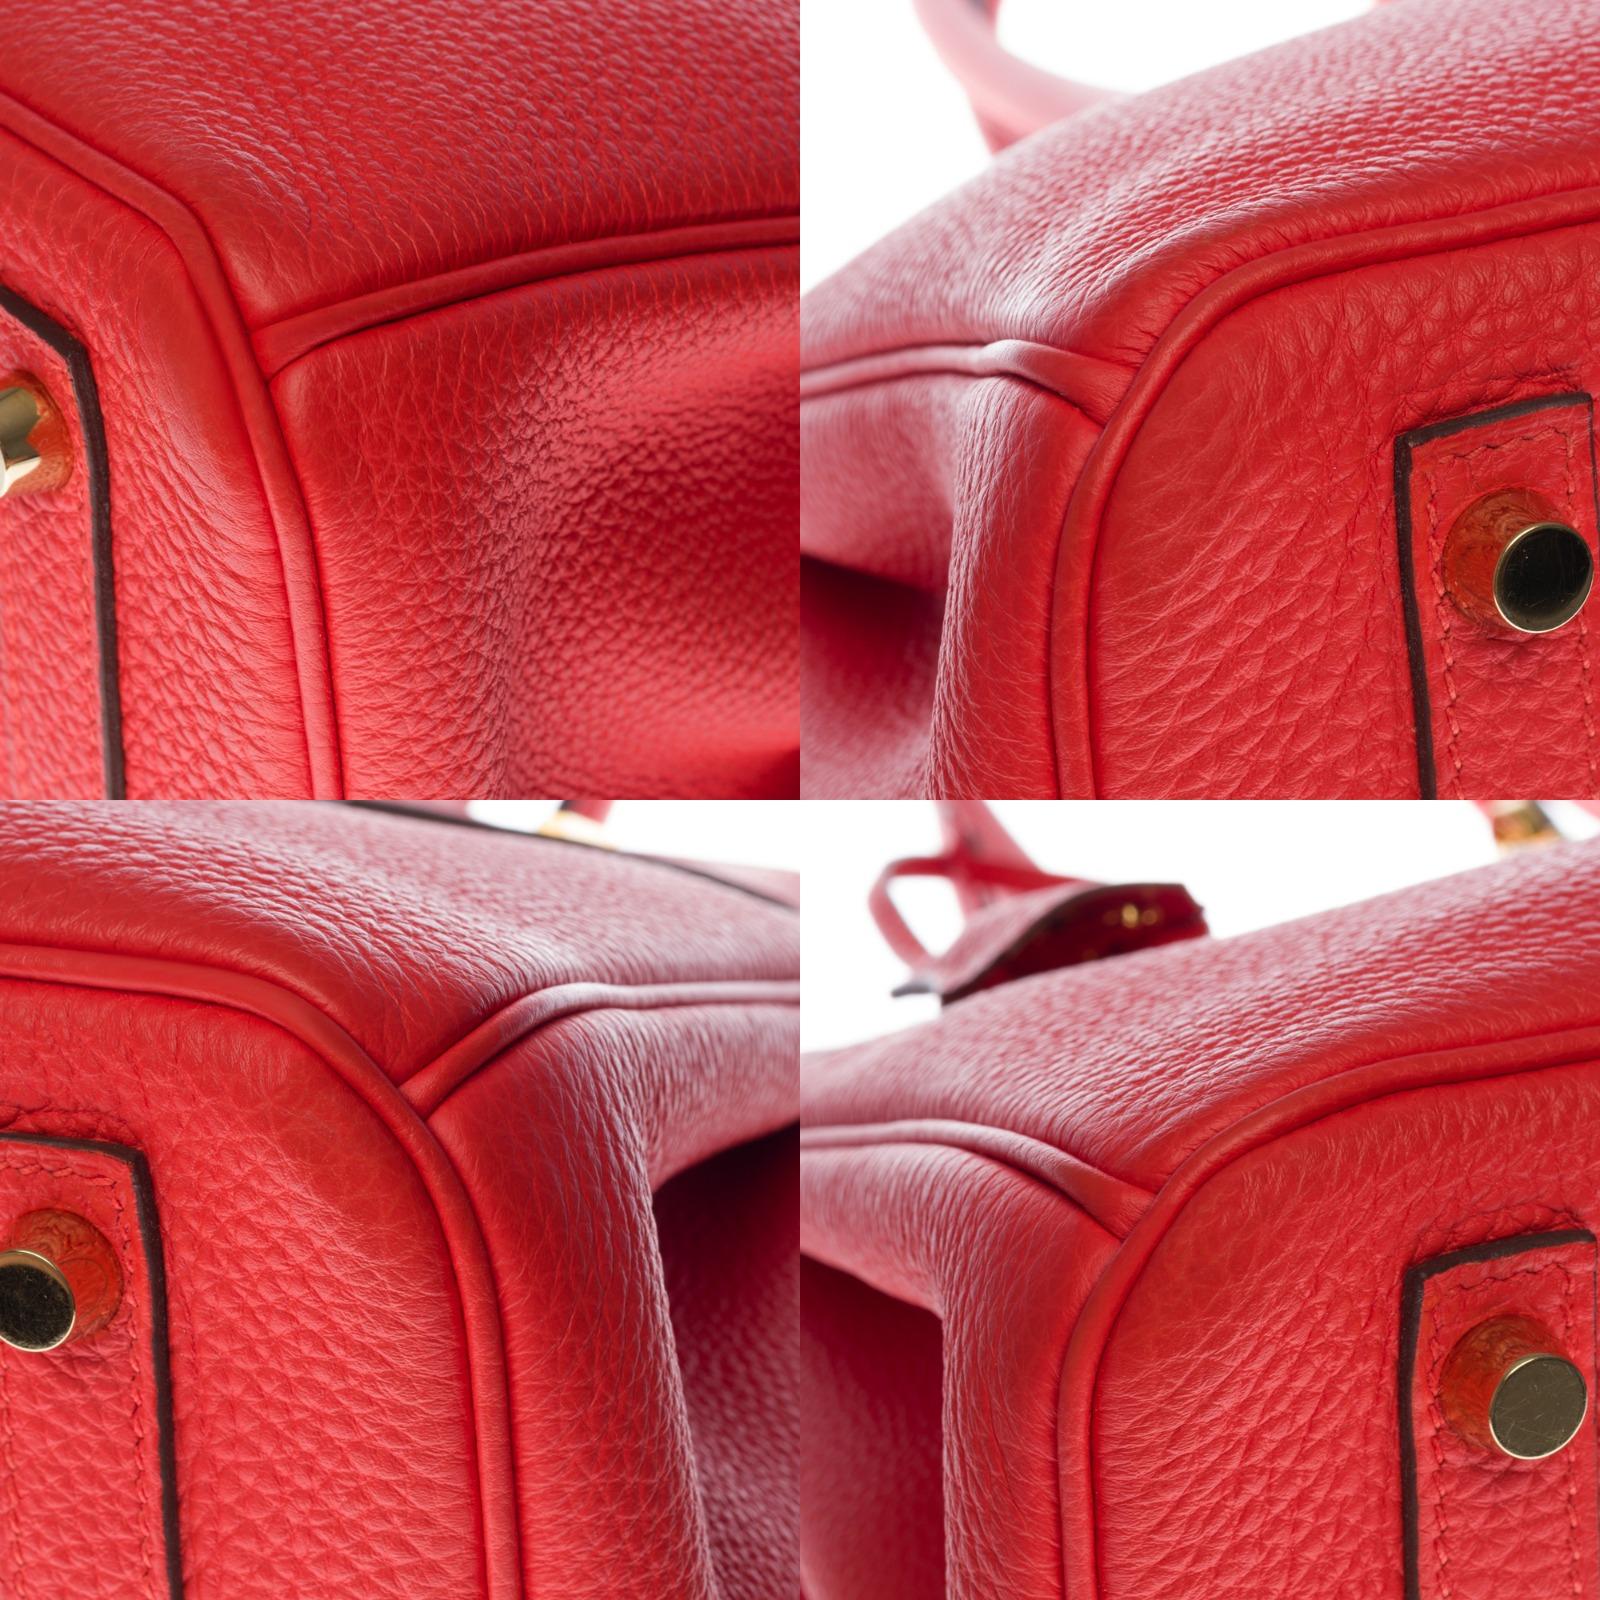 Stunning Hermès Birkin 30 handbag in Rouge Capucine Togo leather, GHW 5